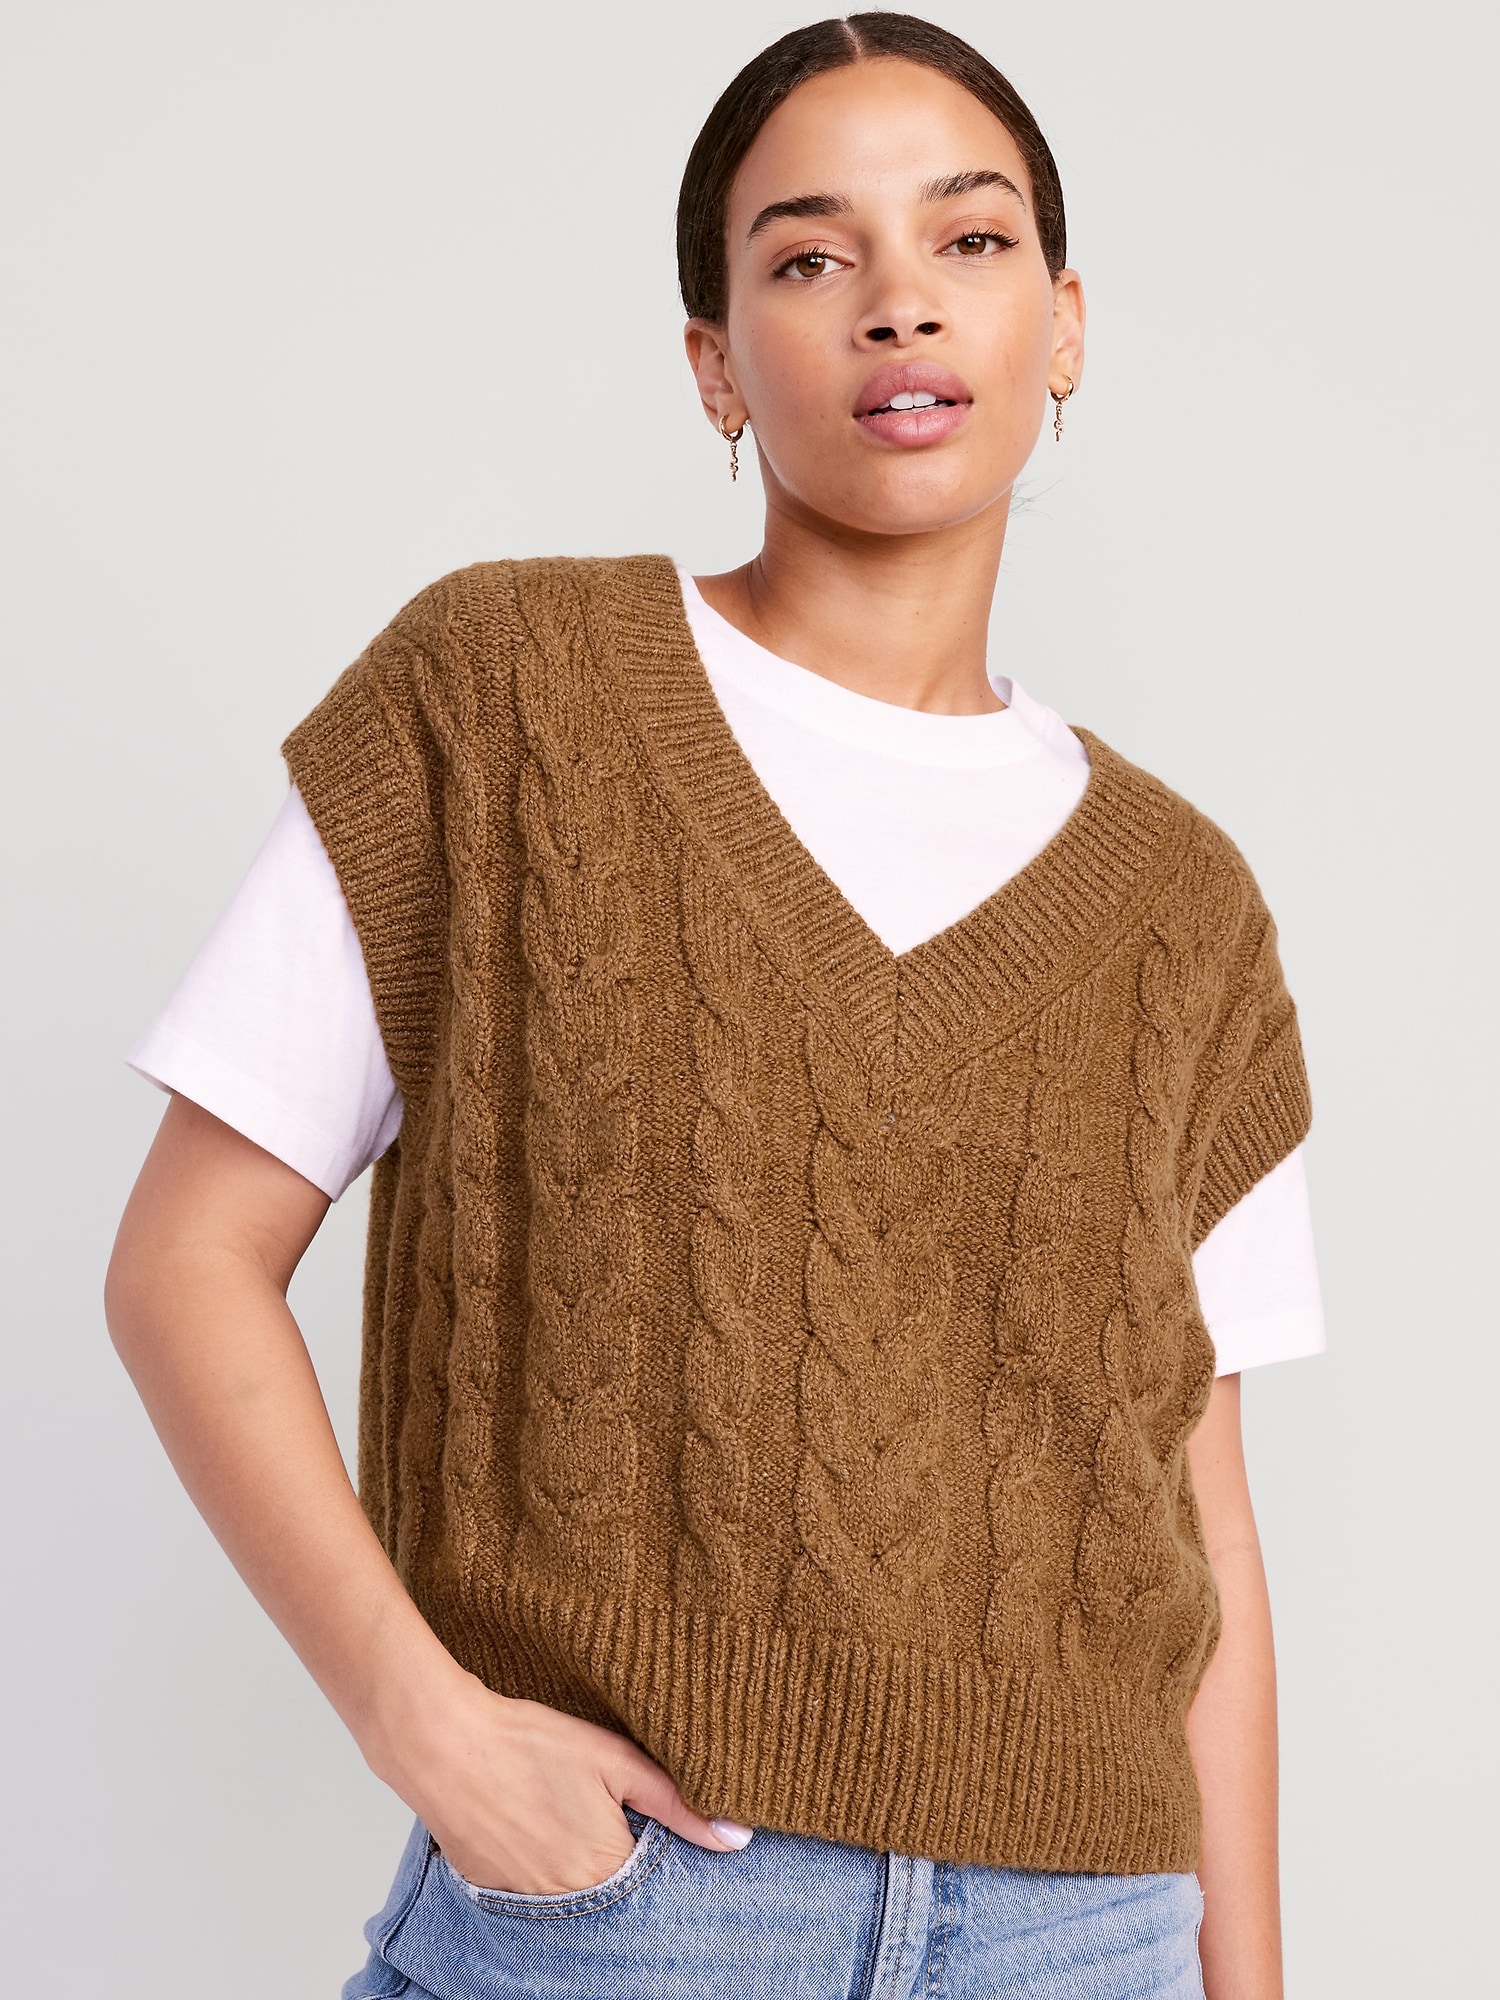 Women's Sweater Vests,Women'S V Neck Sweater Vest Beige Solid